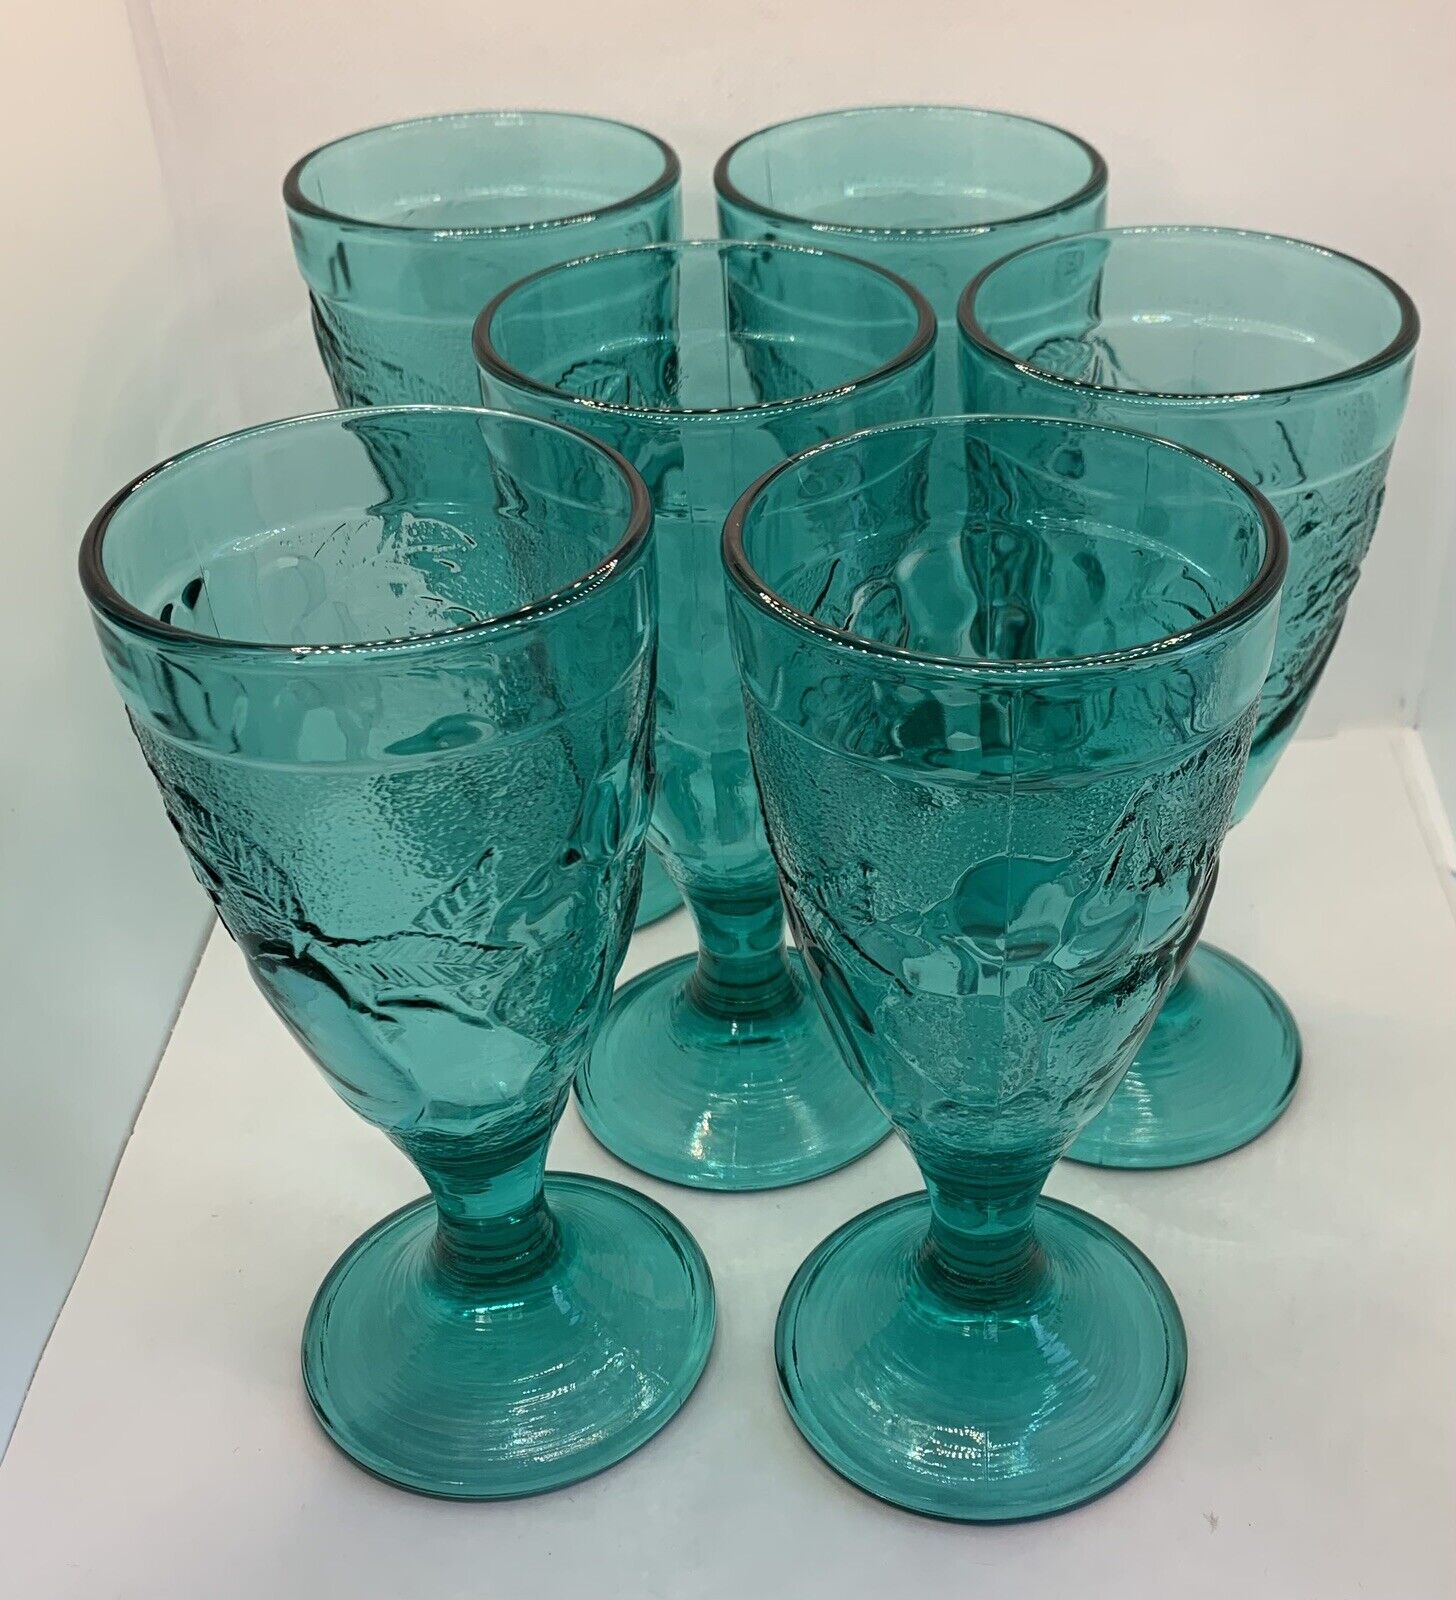 Vintage Pressed Glass Goblets Luminarc France 80s Footed Aqua Blue Fruit Motif